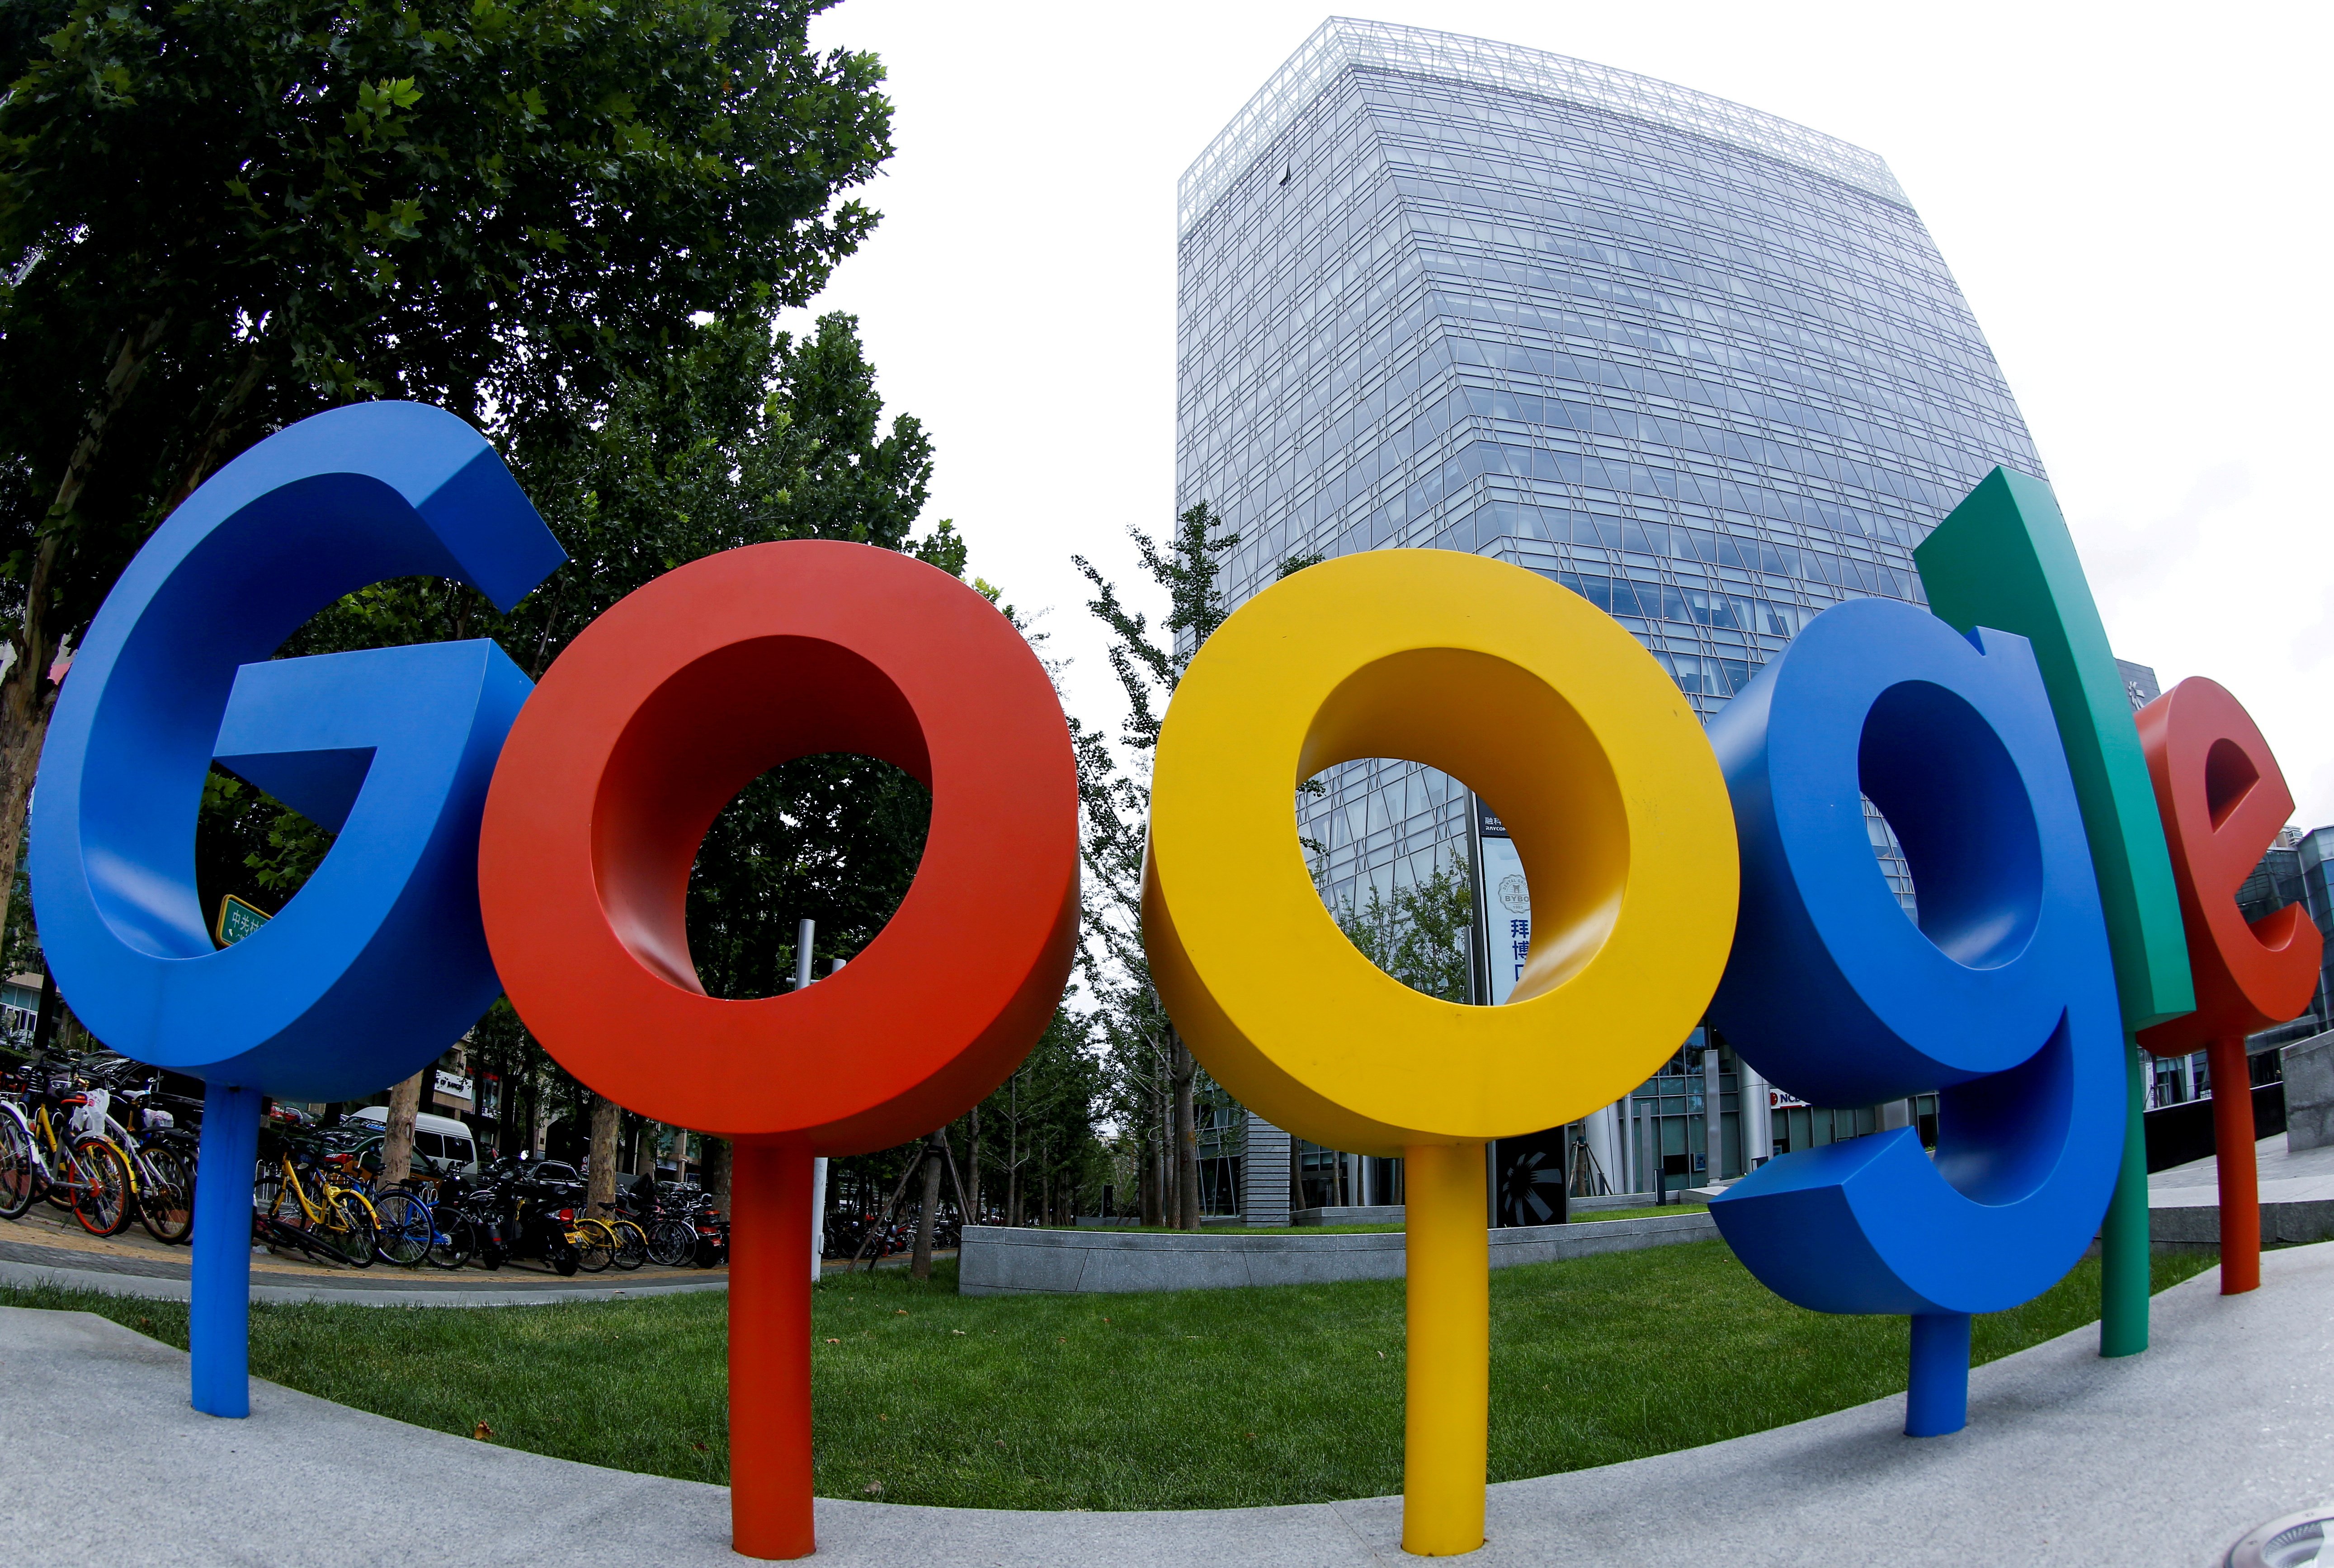 Alphabet, empresa matriz de Google, ocupa el segundo lugar en el ranking (REUTERS/Thomas Peter/File Photo)